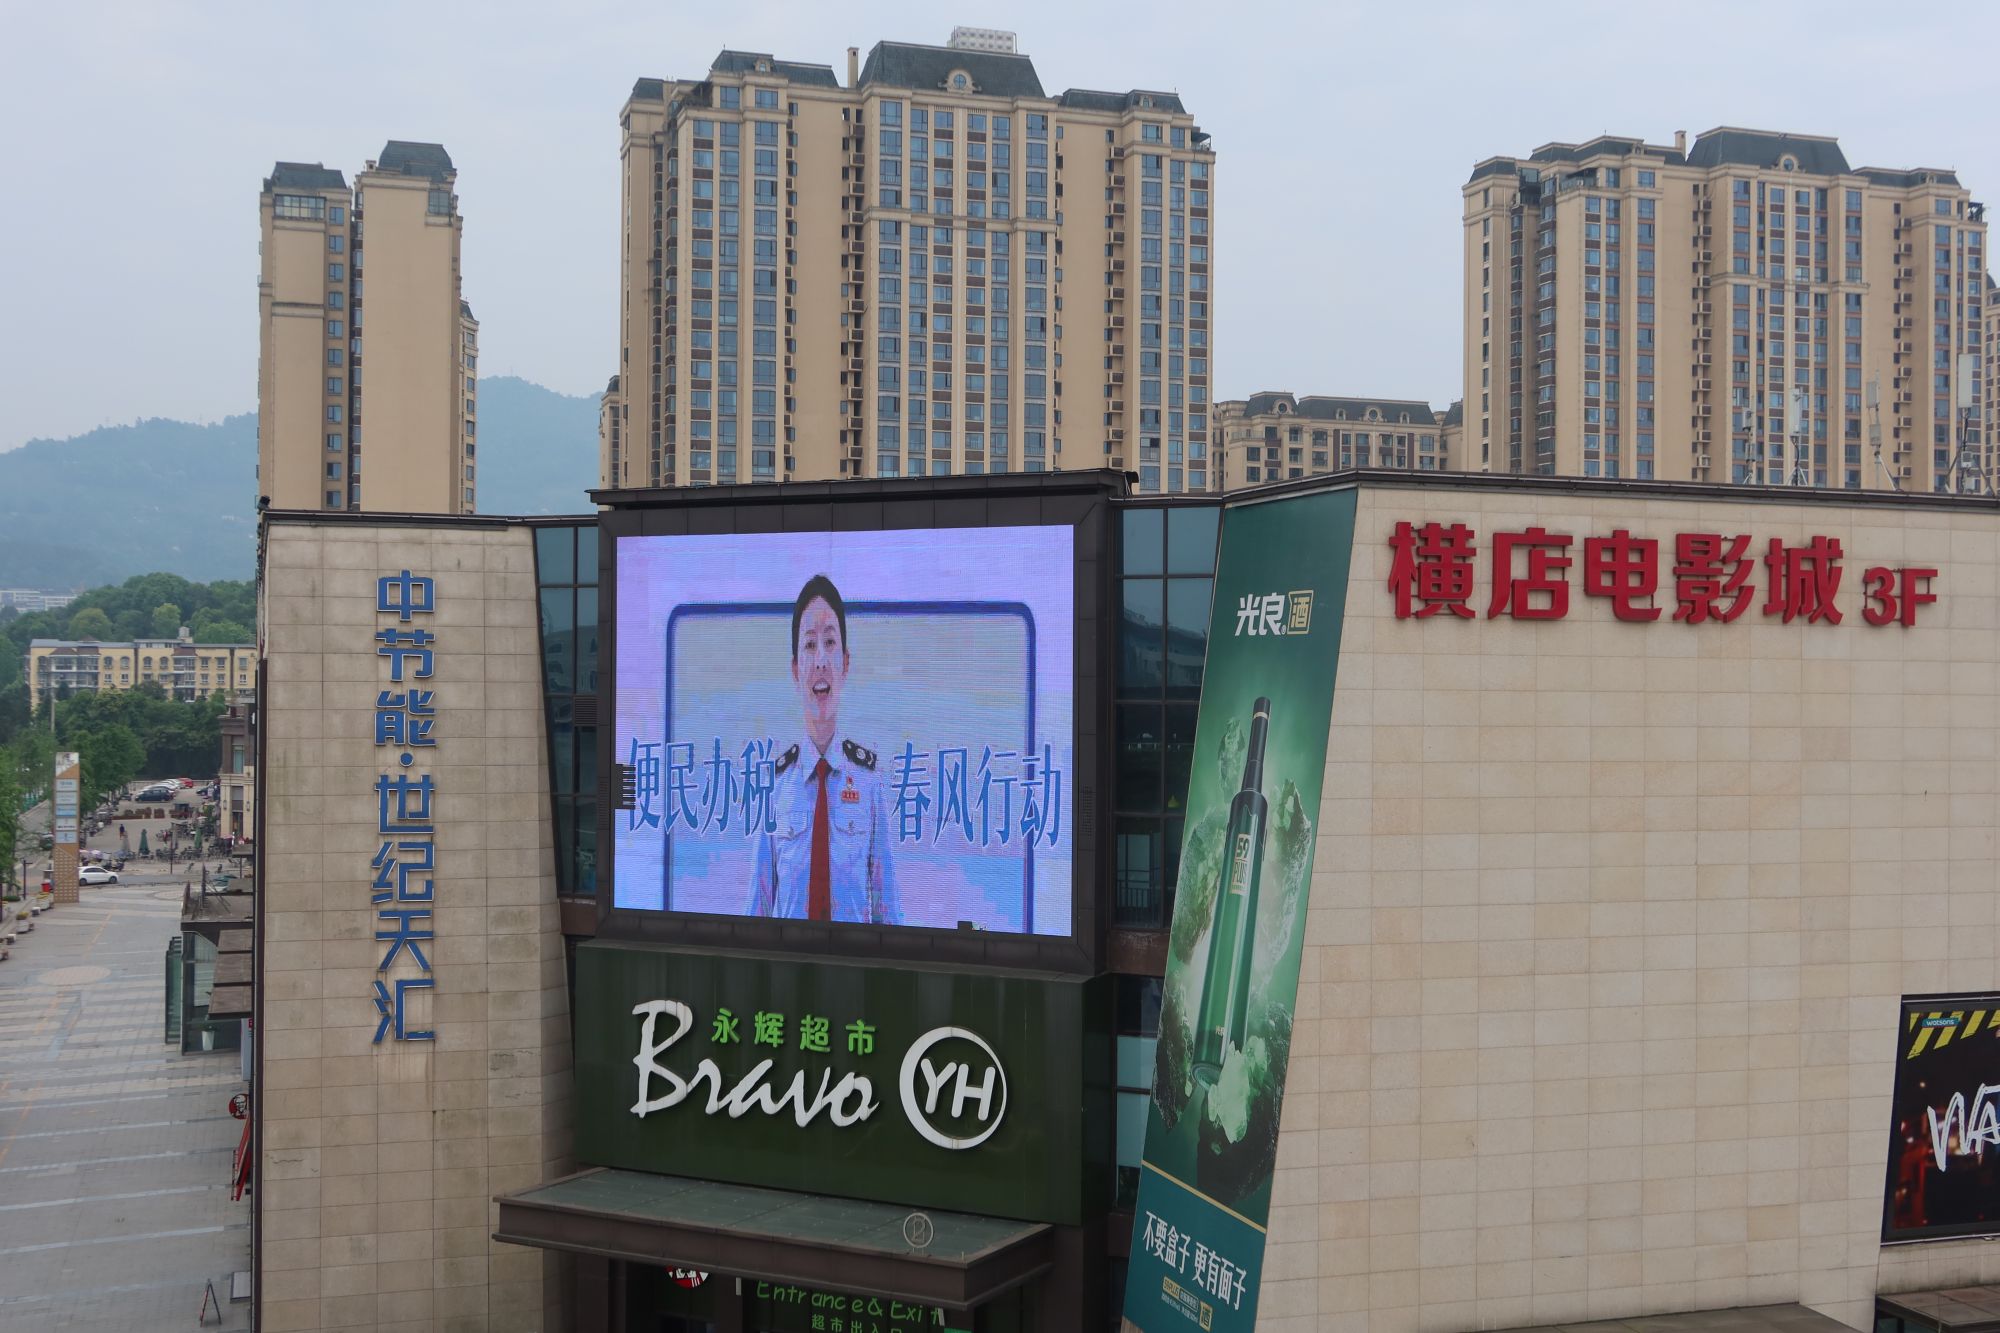 蒲江税务在县域内热门商圈大屏投放税收宣传视频